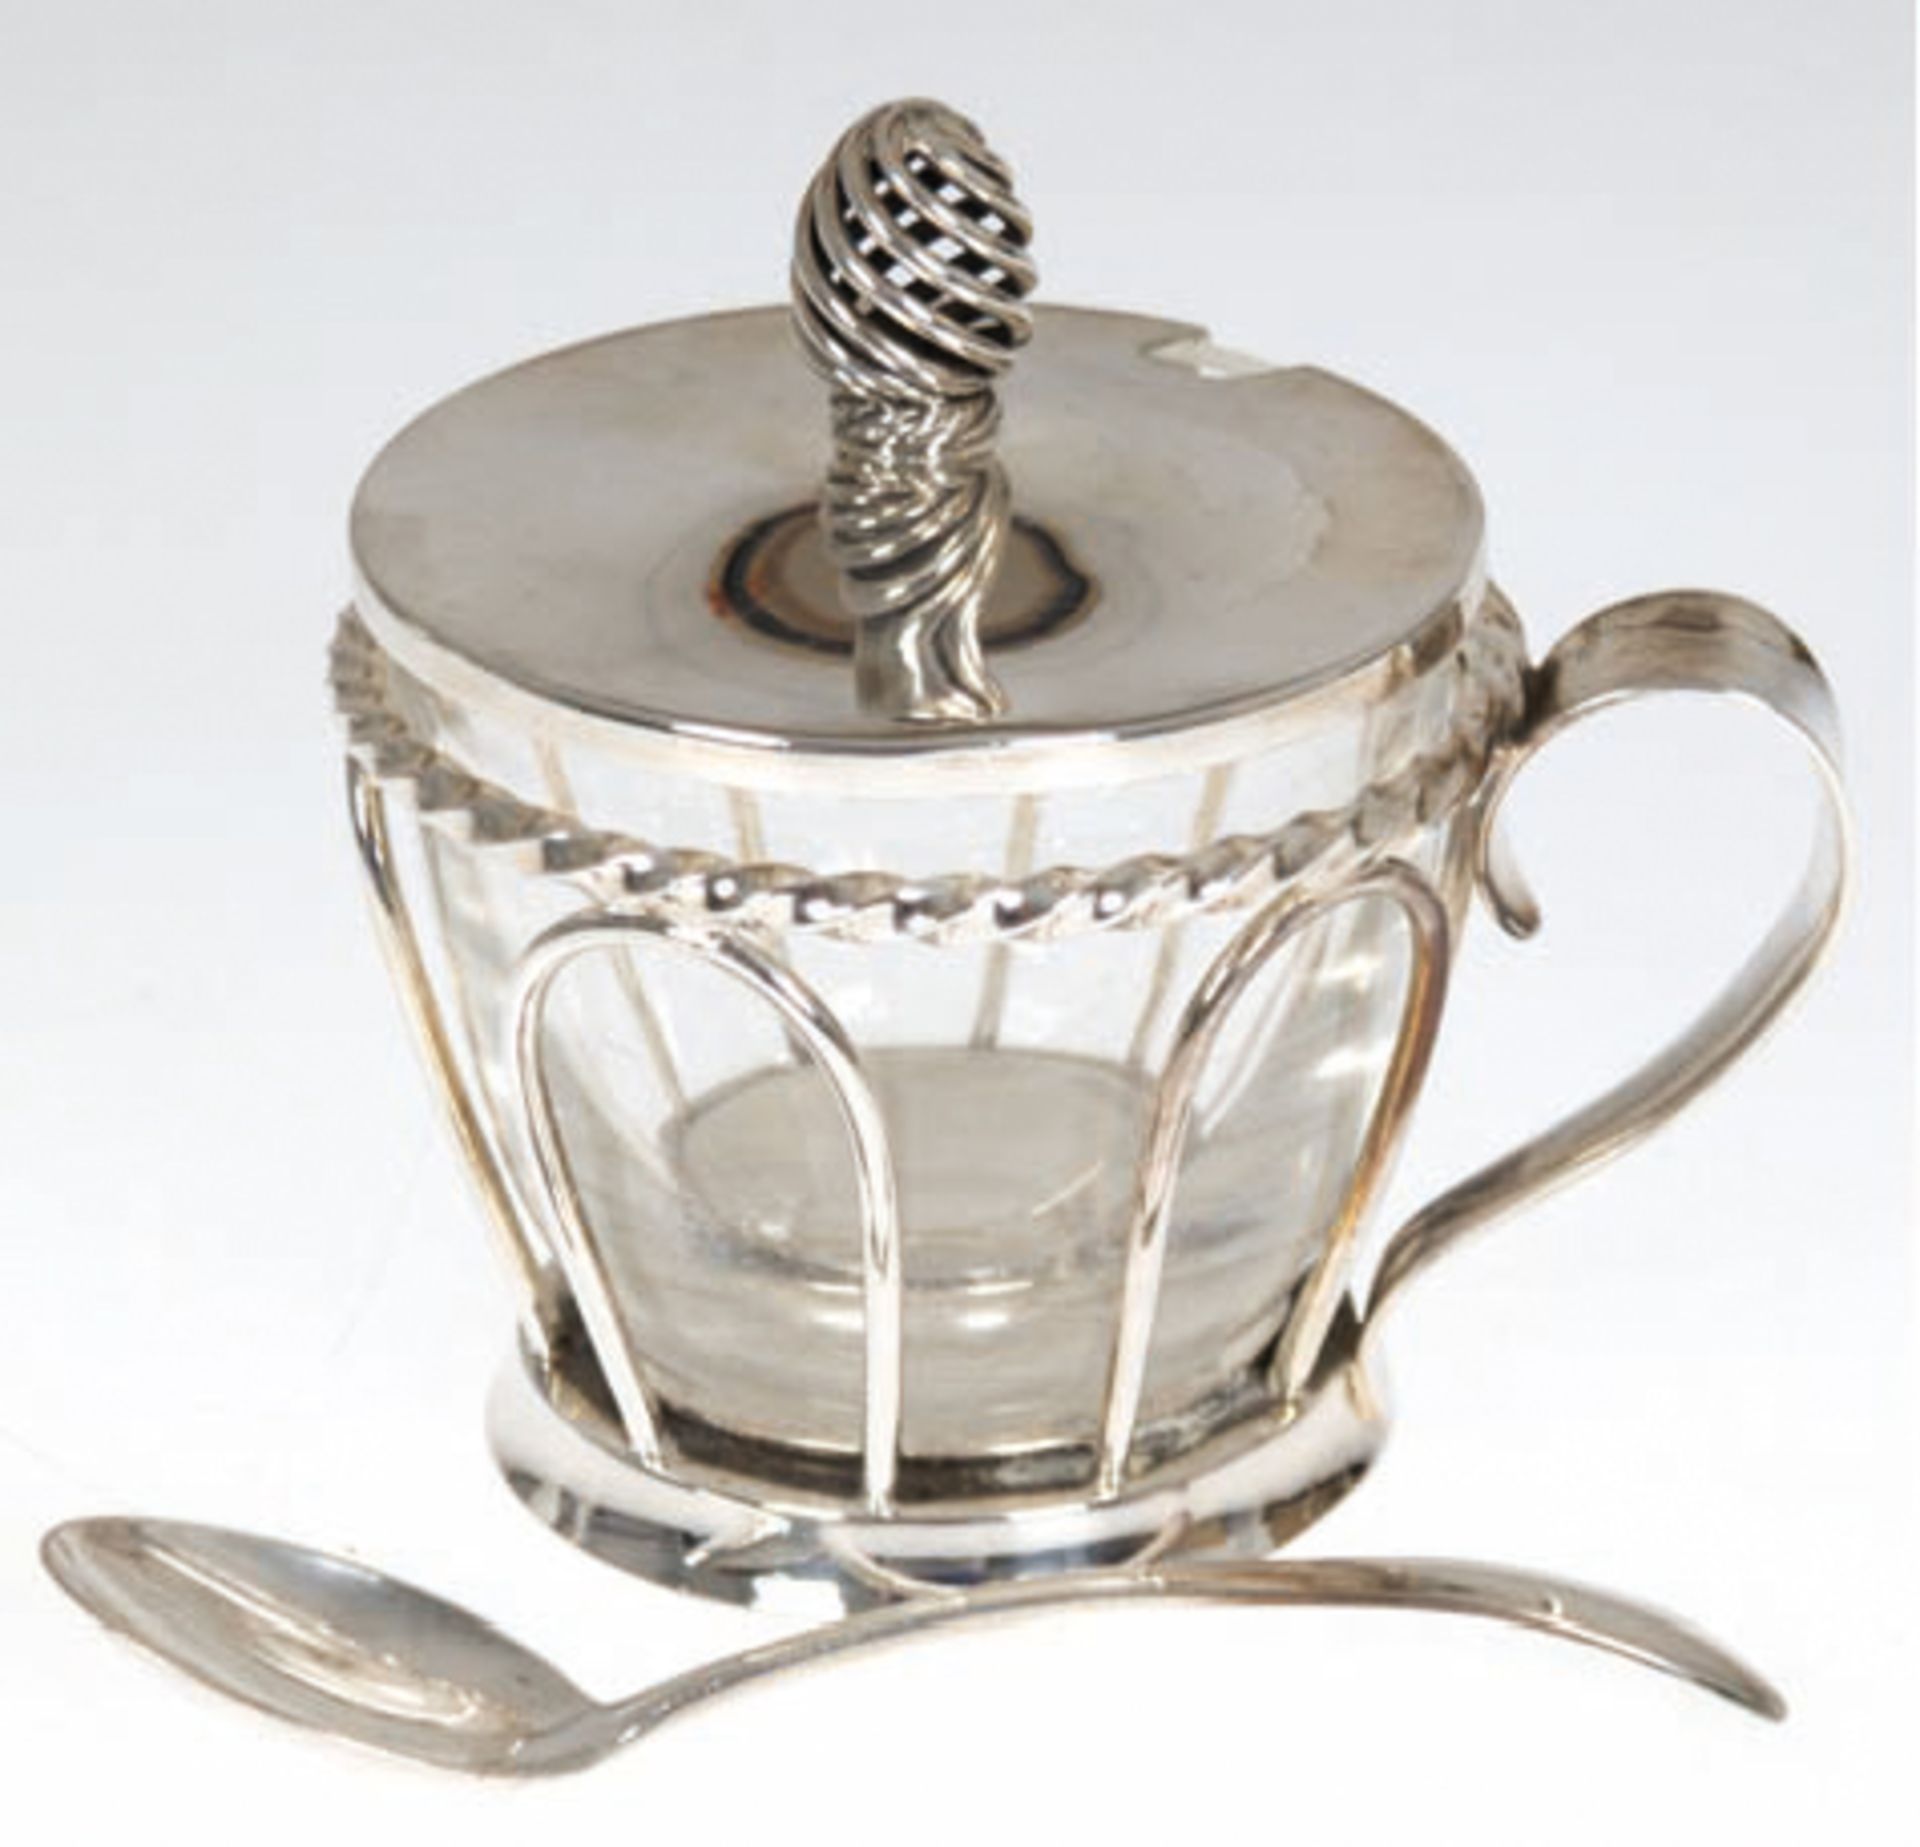 Marmeladengefäß mit Deckel und Löffel, 835er Silberhalterung mit Handhabe, farbloser Glaseinsatz, H